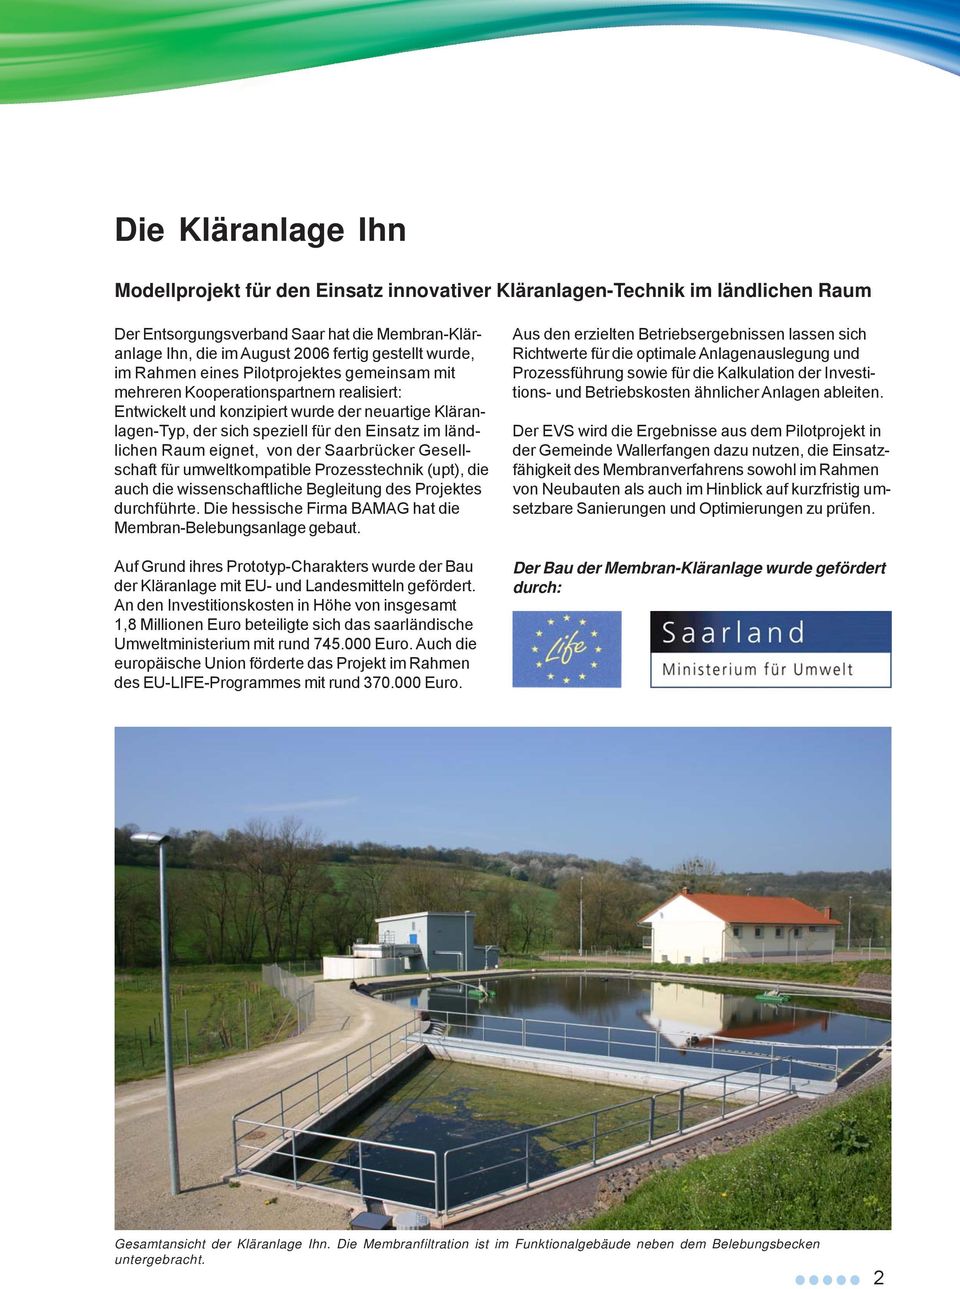 ländlichen Raum eignet, von der Saarbrücker Gesellschaft für umweltkompatible Prozesstechnik (upt), die auch die wissenschaftliche Begleitung des Projektes durchführte.